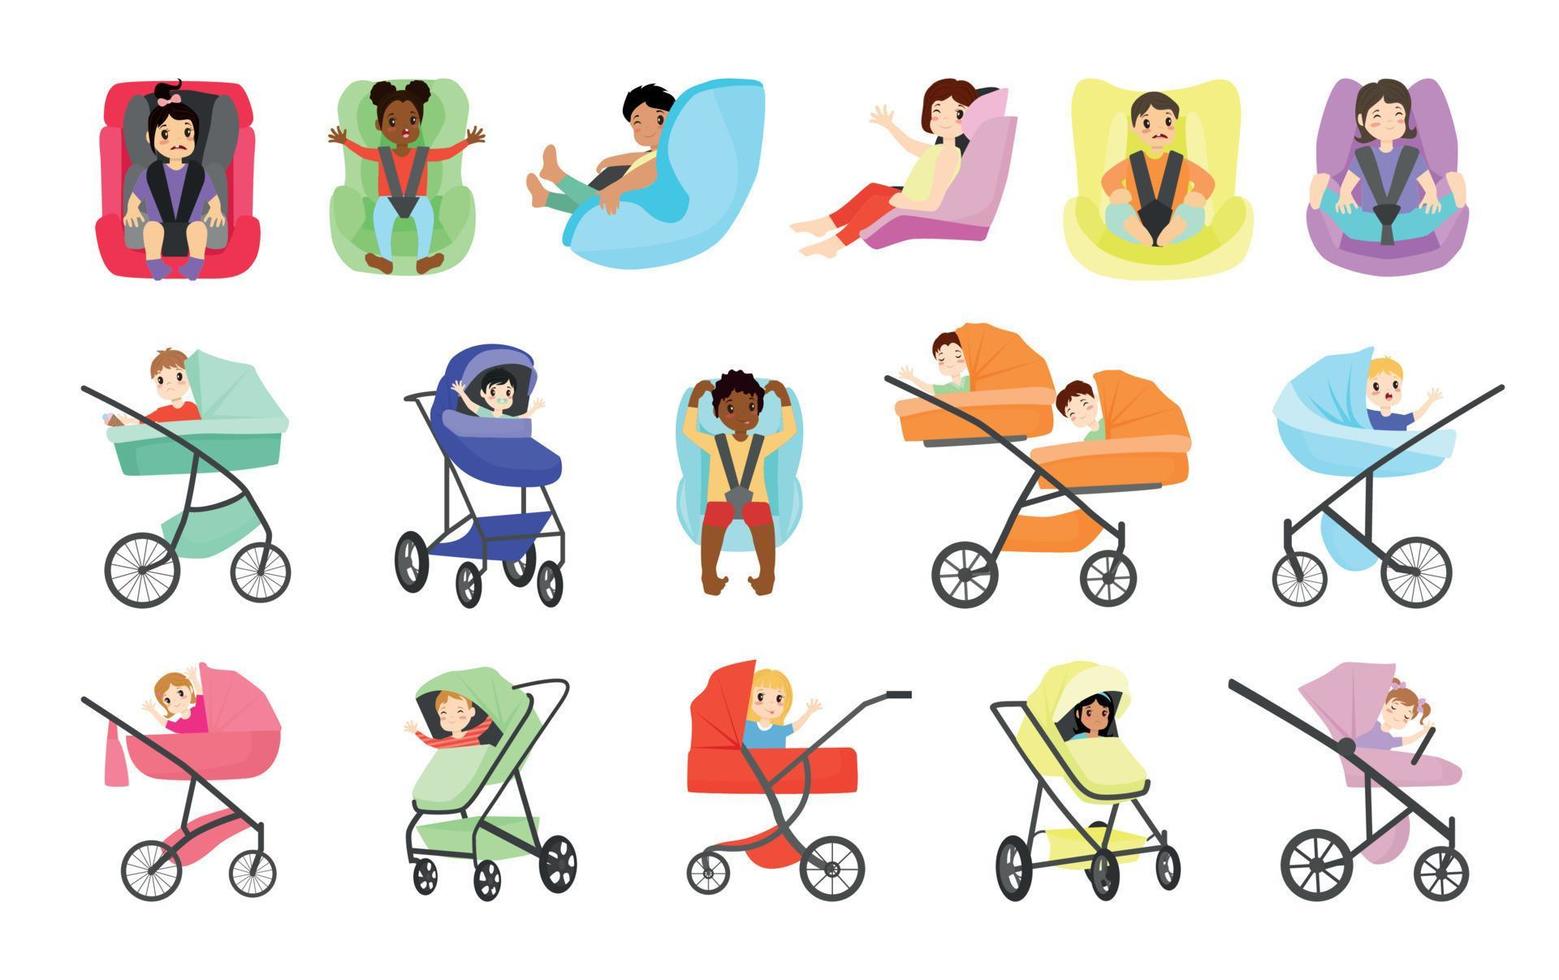 småbarn i barnvagnar och bilbarnstolar vektor